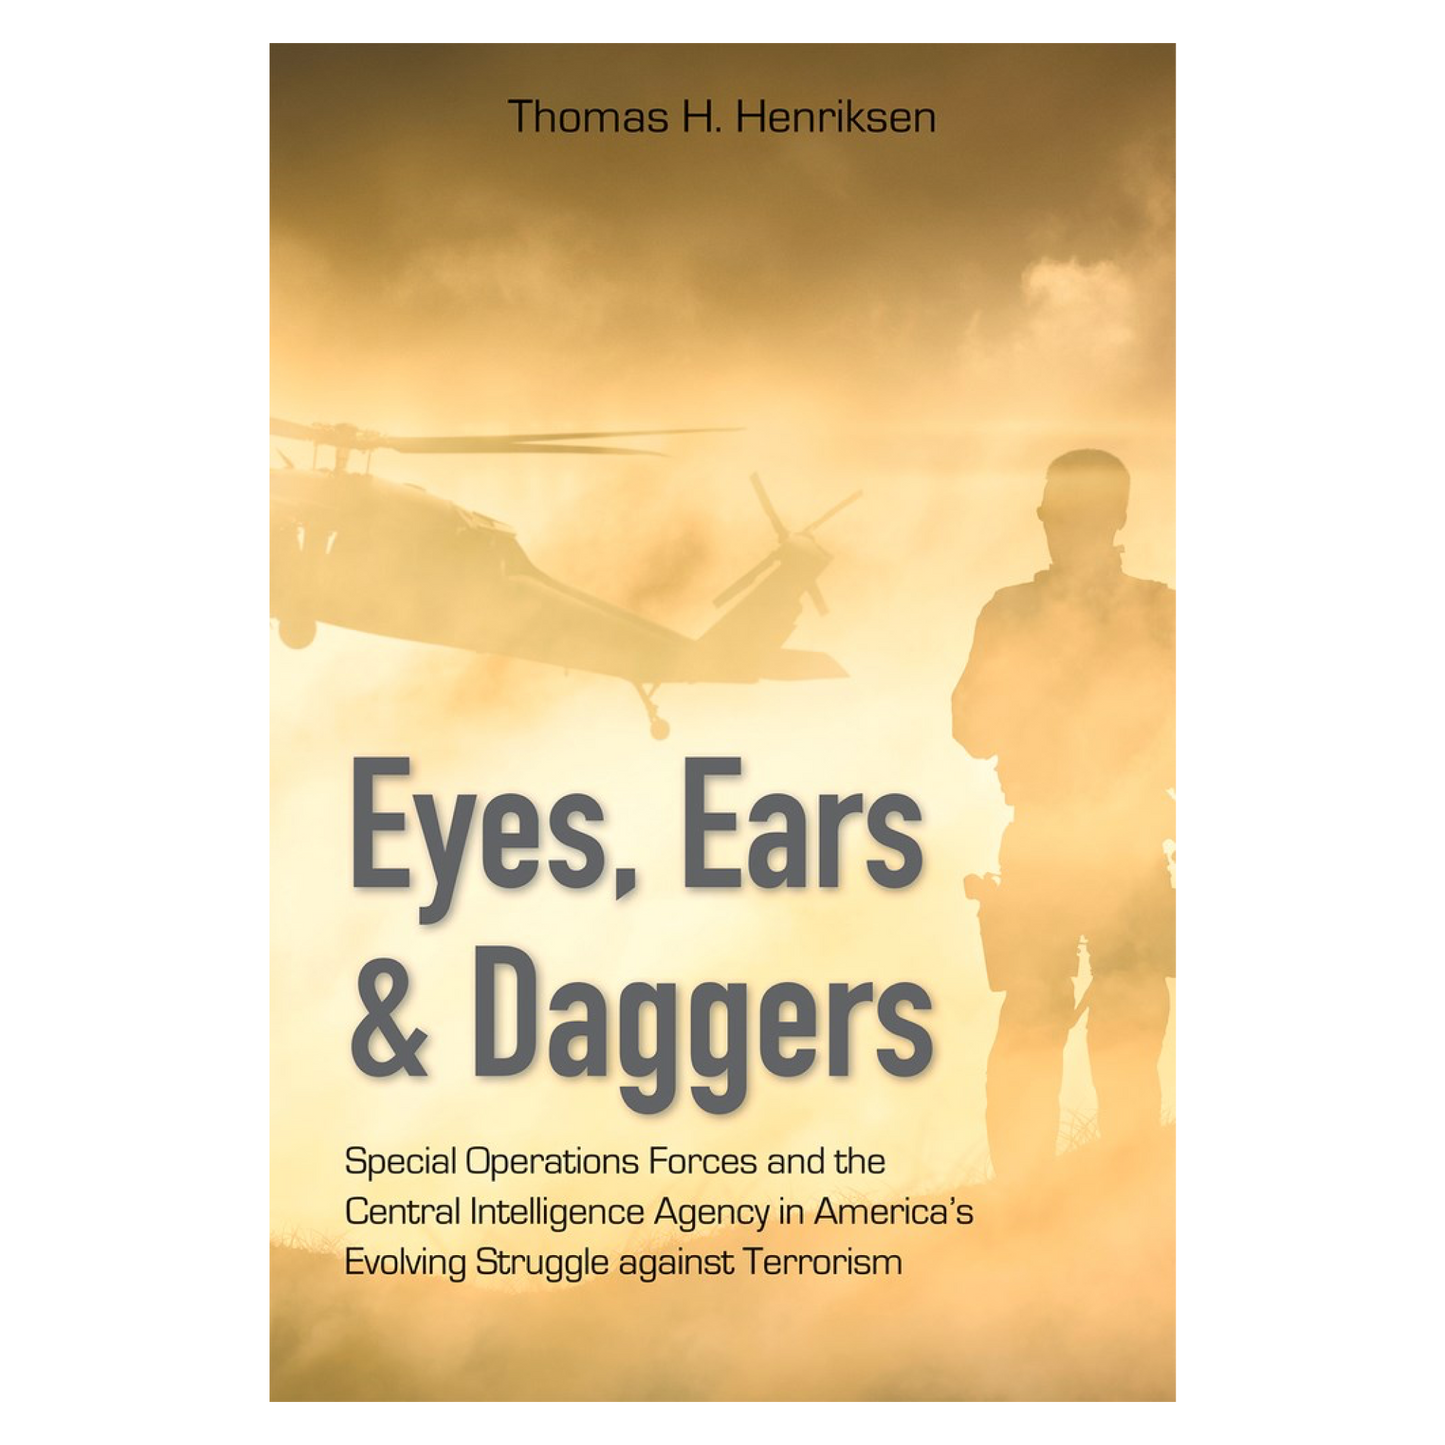 Eyes, Ears & Daggers